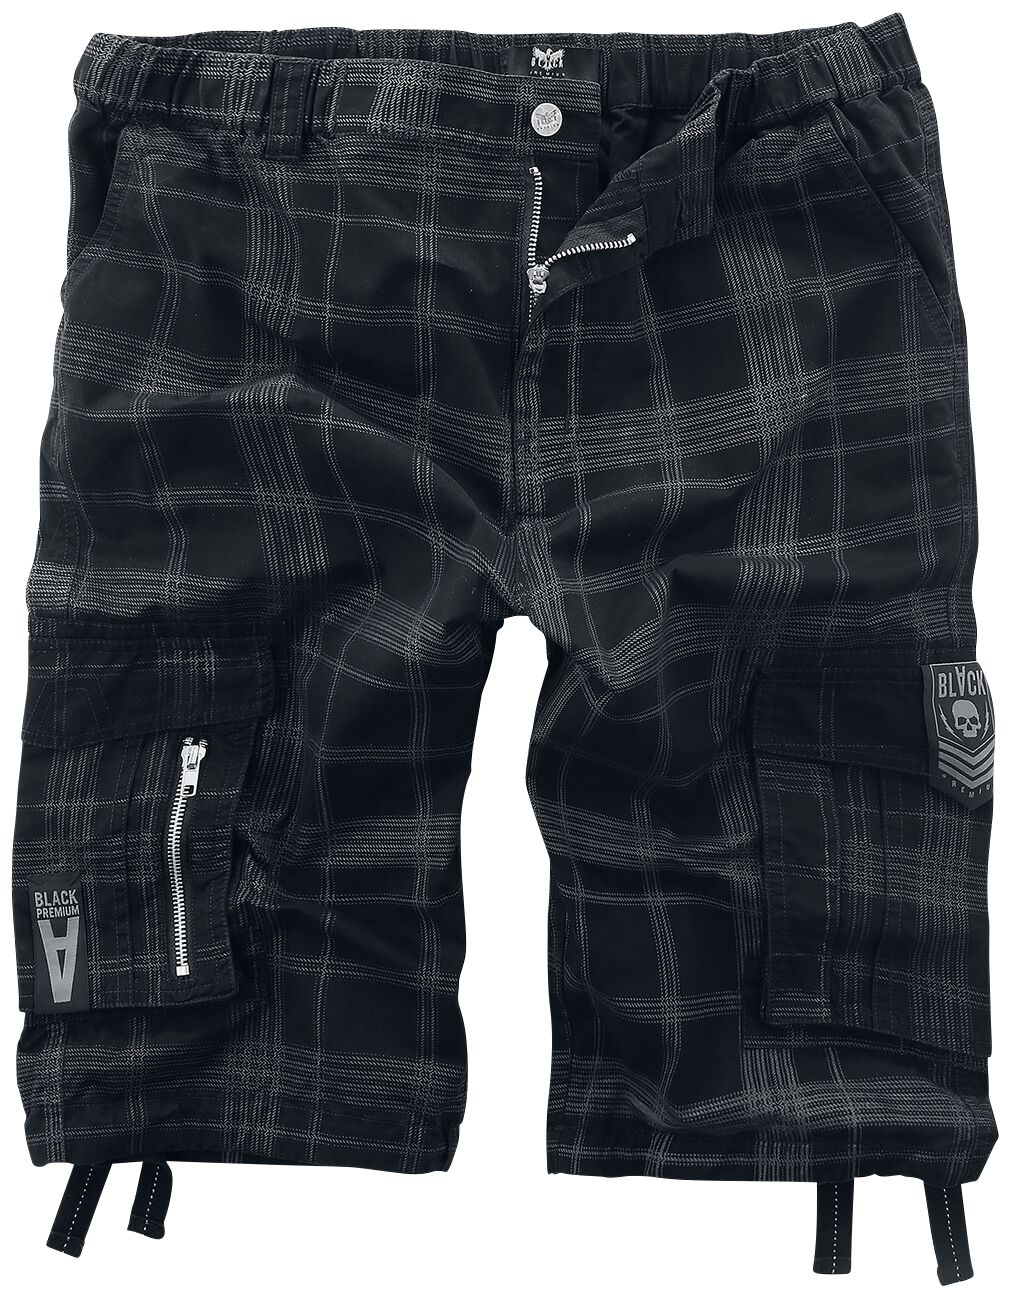 Black Premium by EMP Short - schwarze Shorts mit karo Muster - S bis XXL - für Männer - Größe XL - schwarz/grau